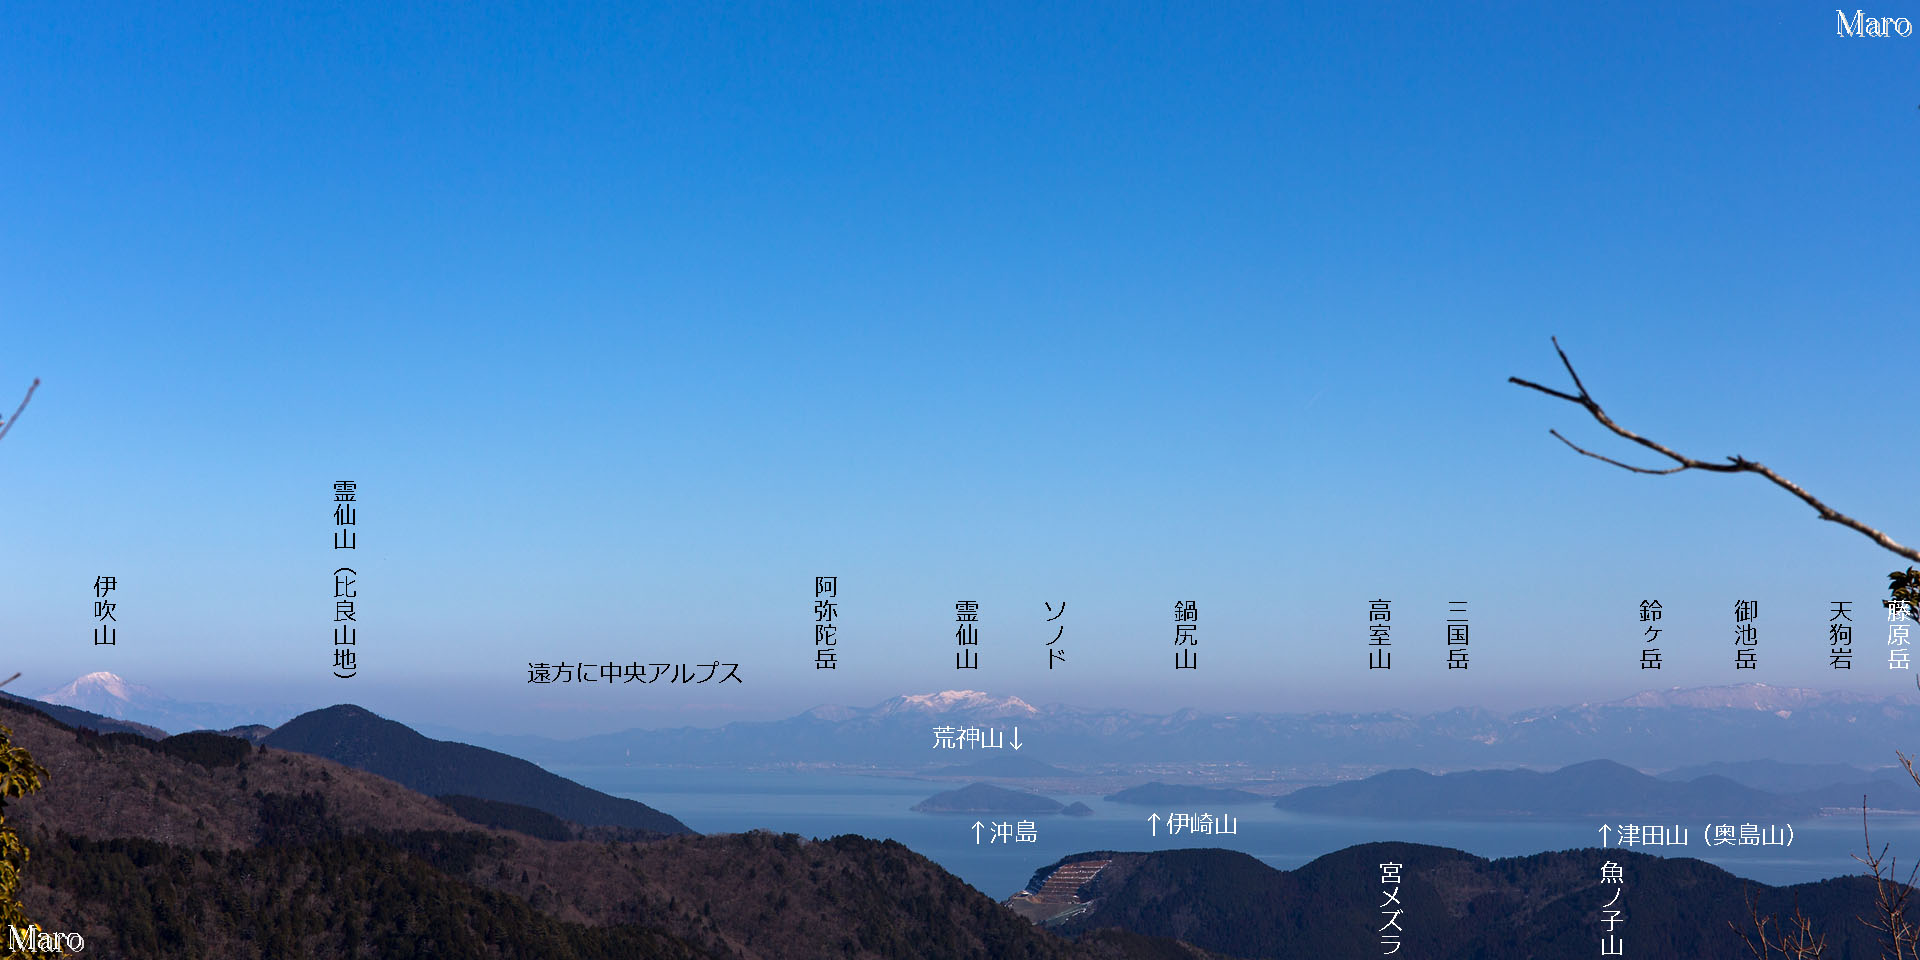 京都北山 冬の天ヶ岳から琵琶湖、伊吹山、鈴鹿北部、中央アルプス（木曽山脈）を眺望 2016年2月